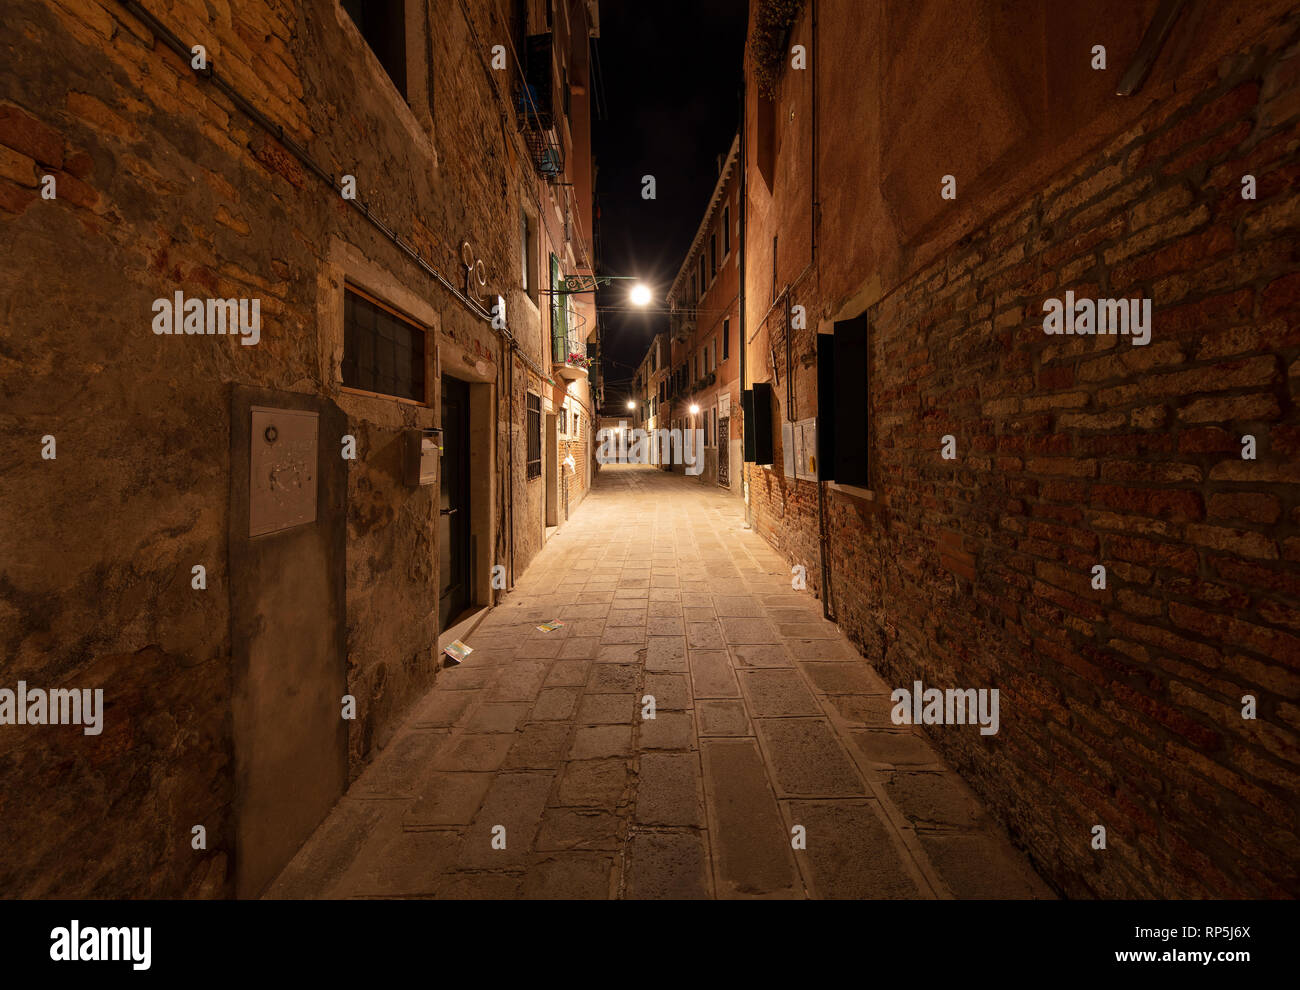 Girovagando intorno a Venezia per la sera troverete molte strade sorprendenti scene come questa. Foto Stock